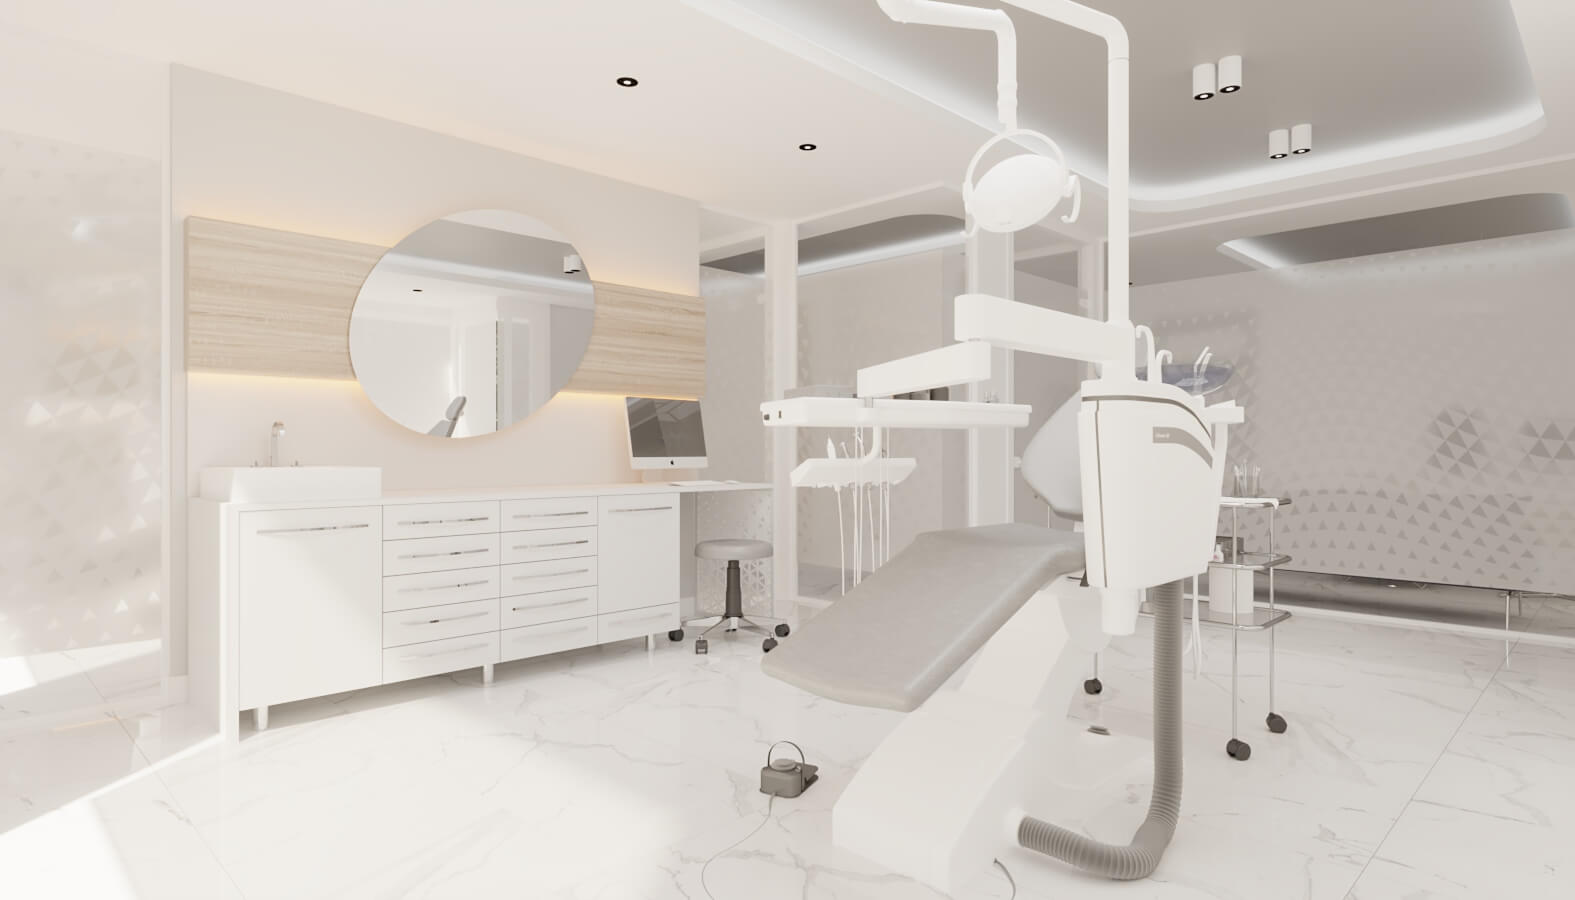  Surgery Clinic 4562 Ankara Dental Clinic Design Healthcare